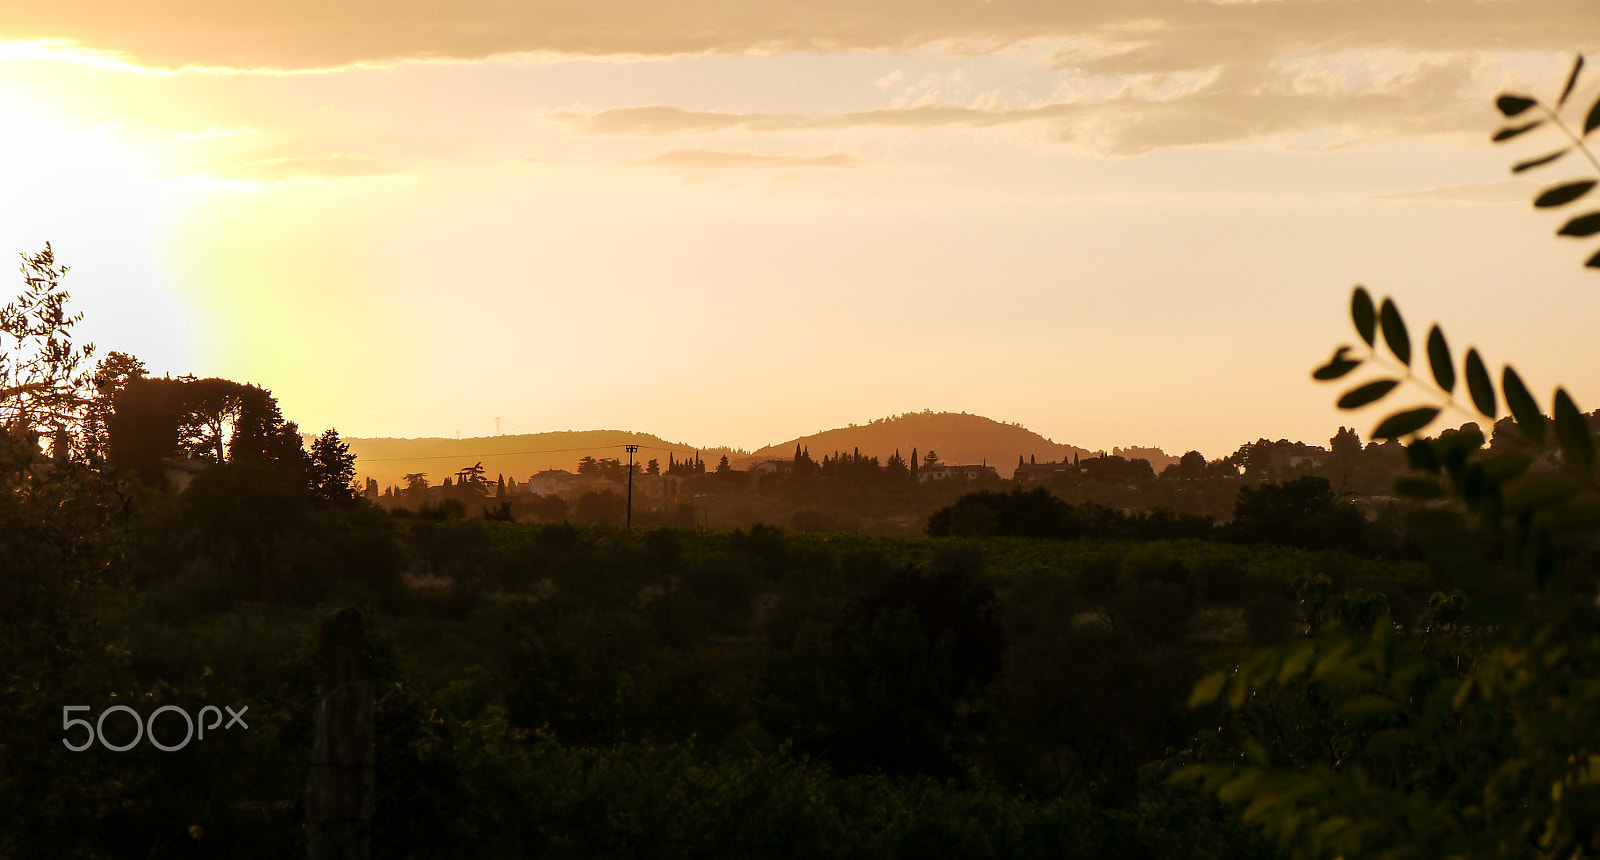 Panasonic Lumix DMC-G5 sample photo. Tuscany sunset photography